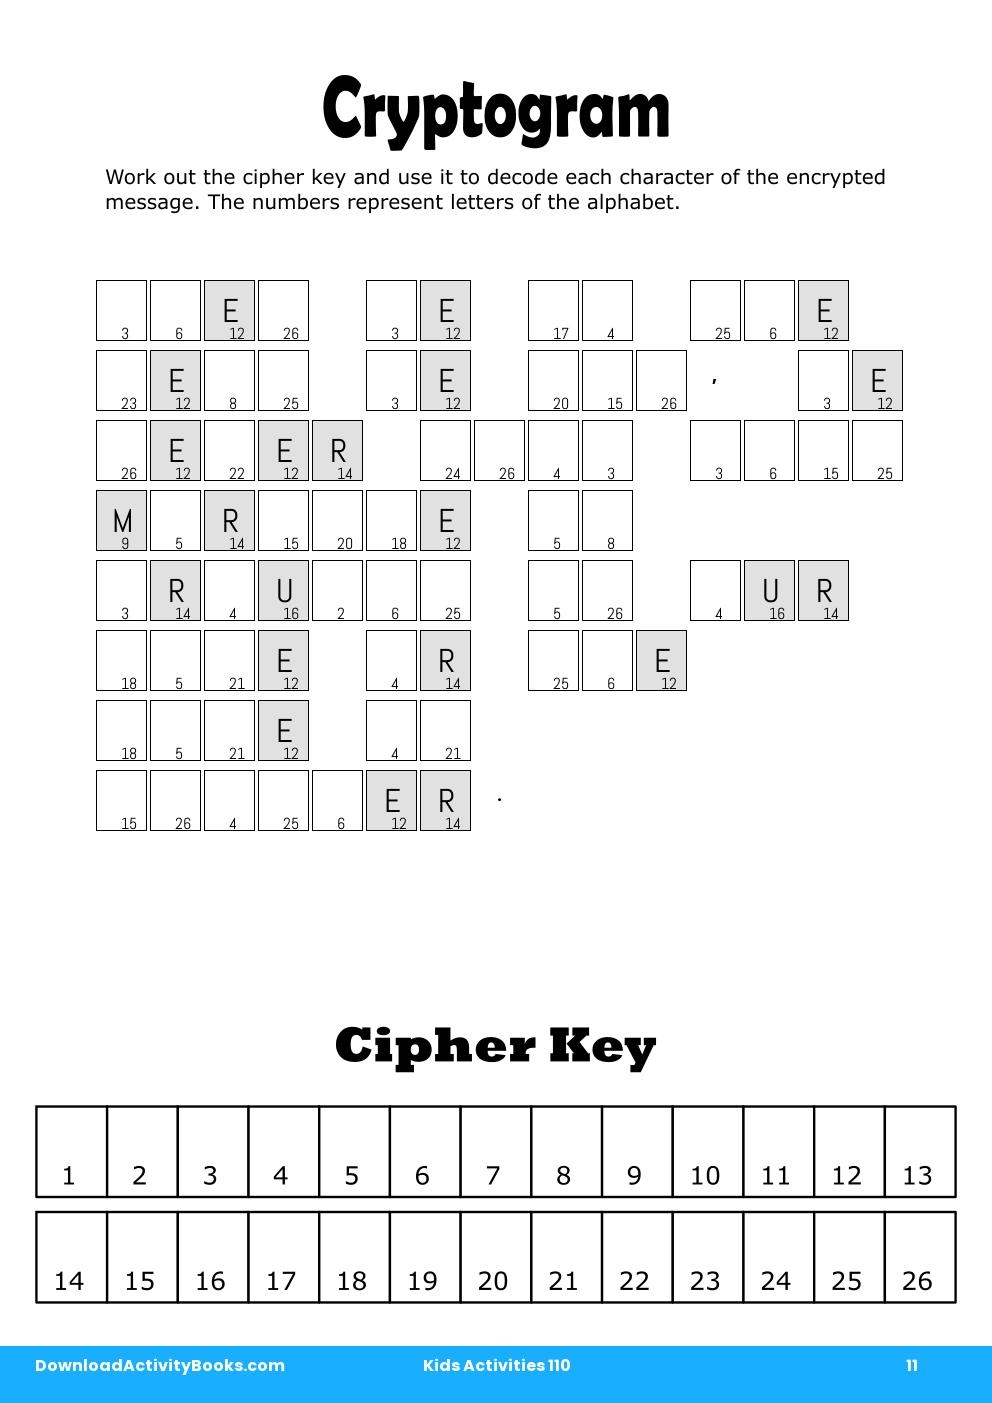 Cryptogram in Kids Activities 110